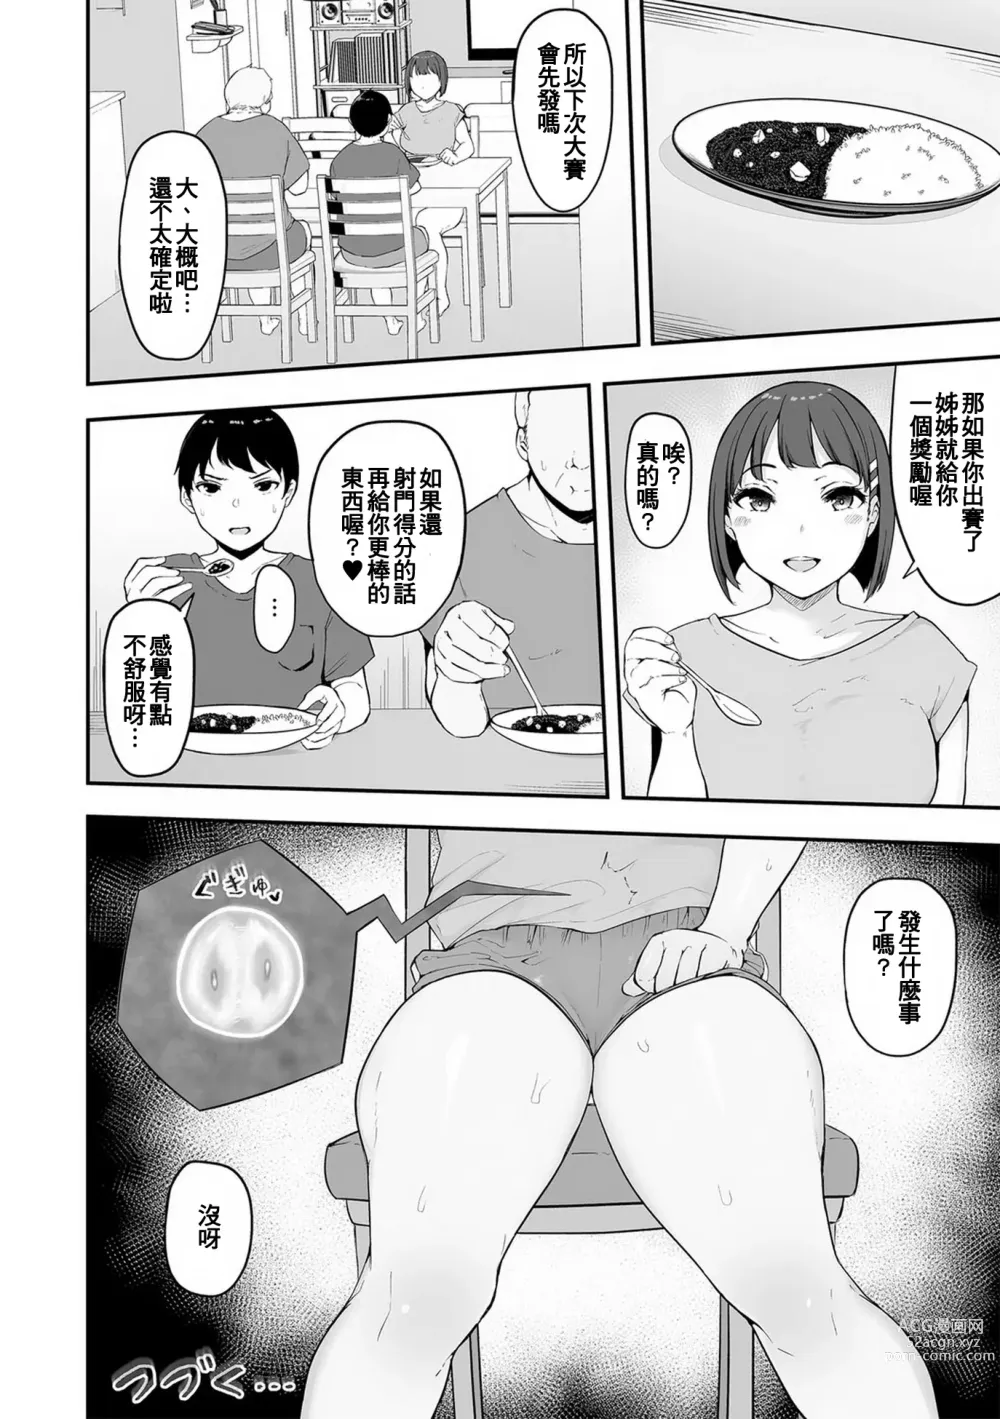 Page 25 of manga Honou ni wa Katenakatta 2